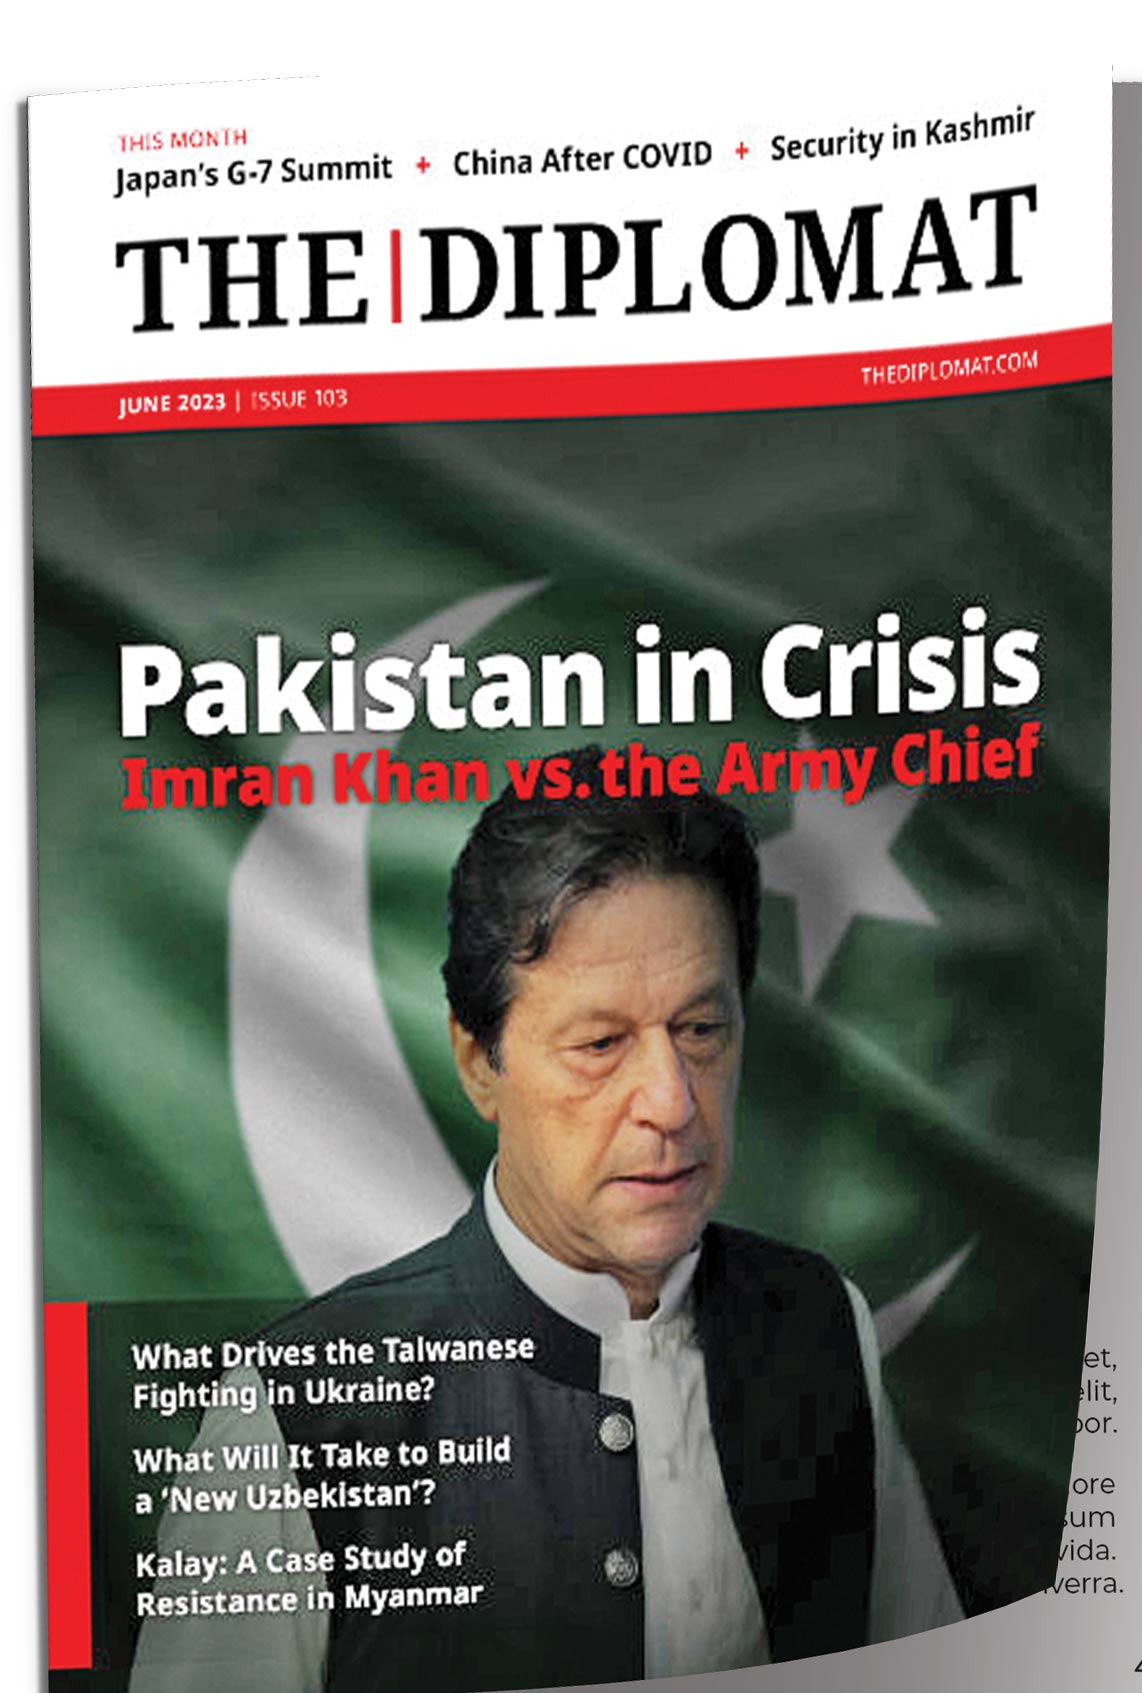 پاکستان در بحران